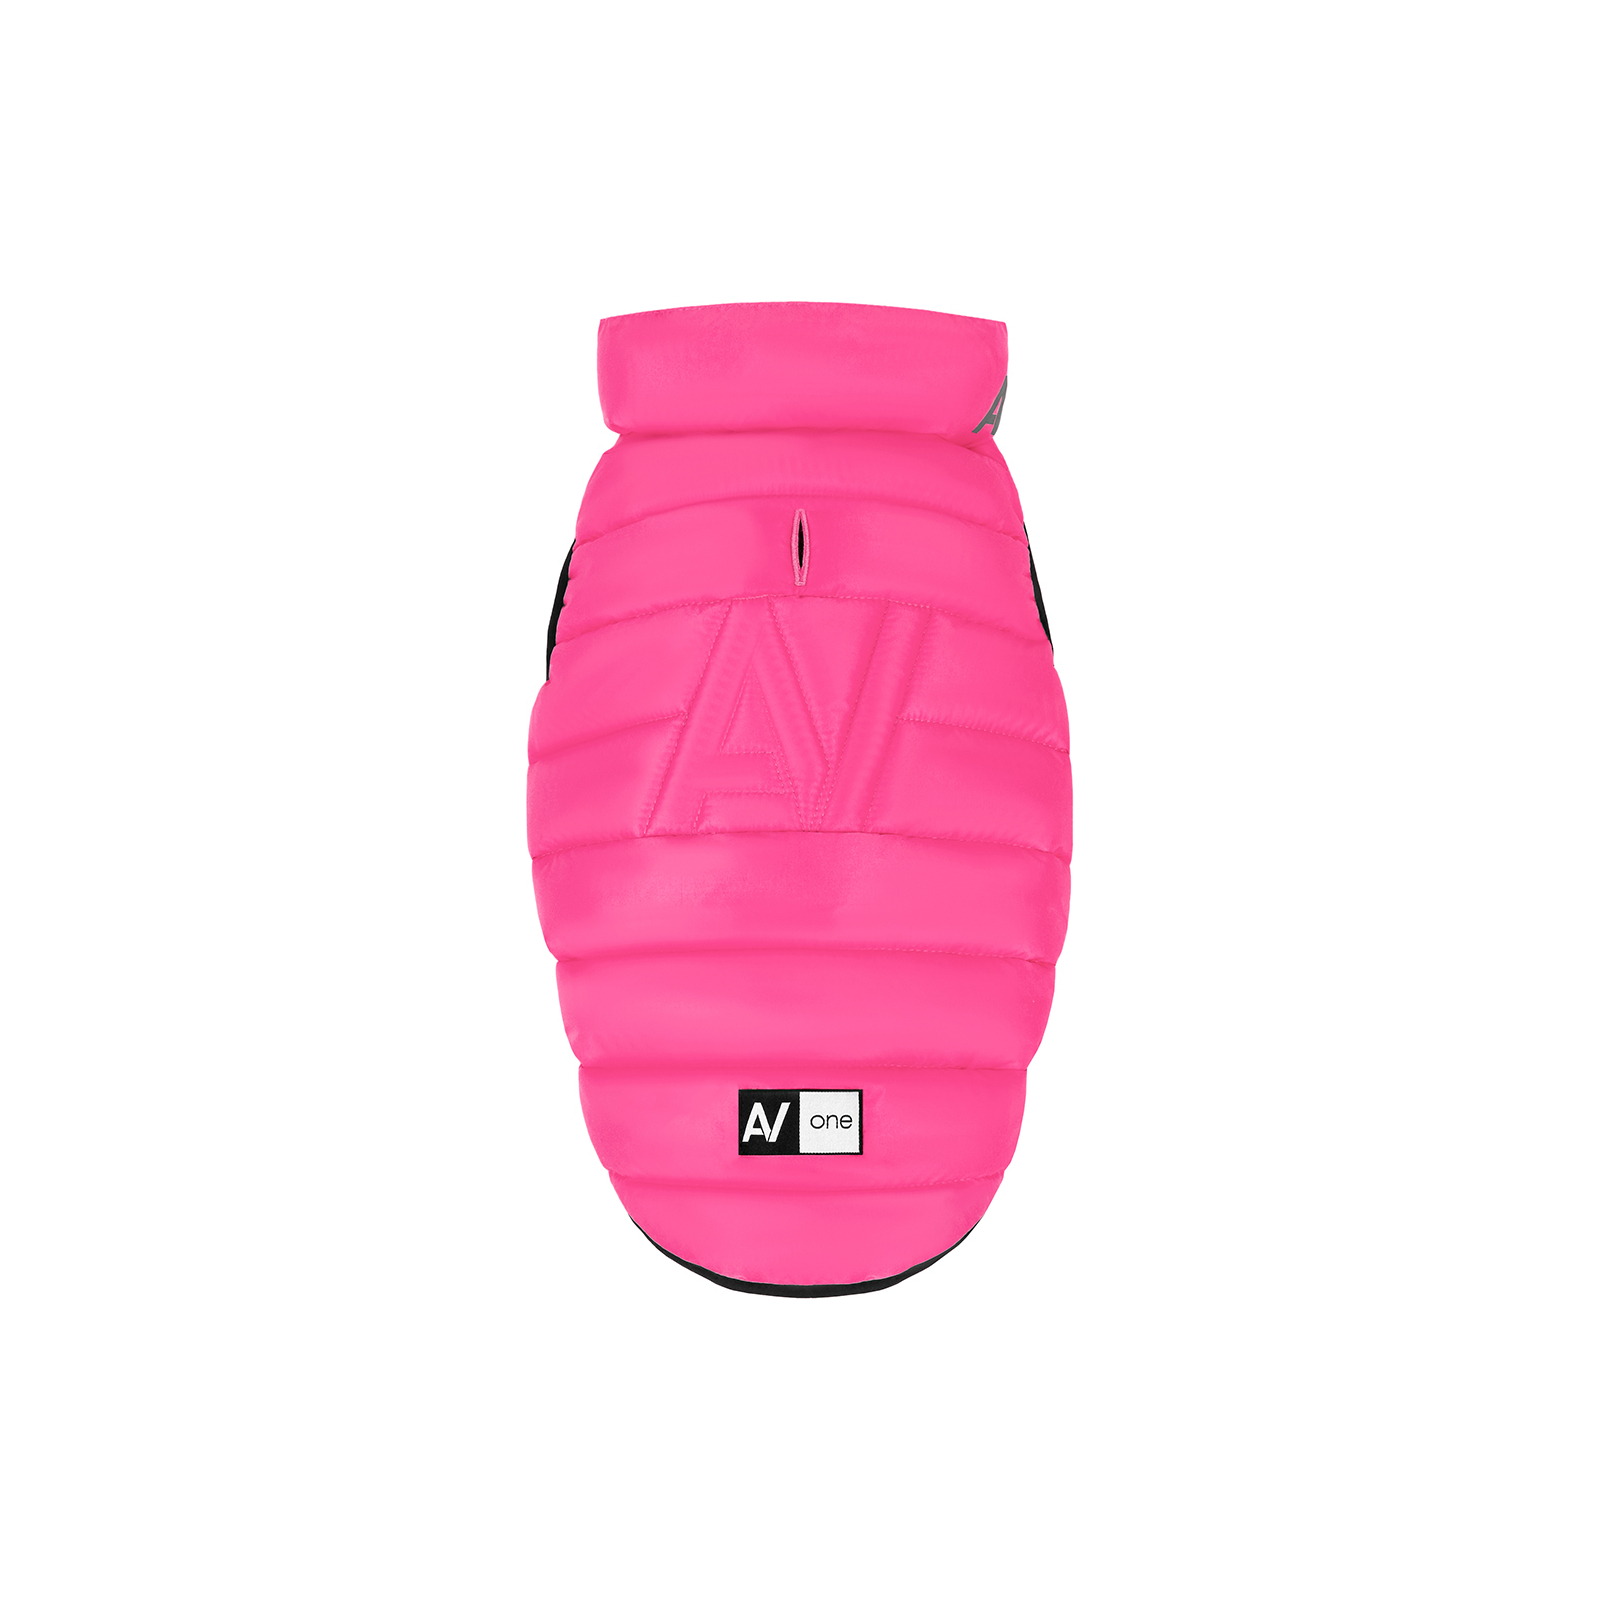 Курточка для животных Airy Vest One М 50 розовая (20737) изображение 2